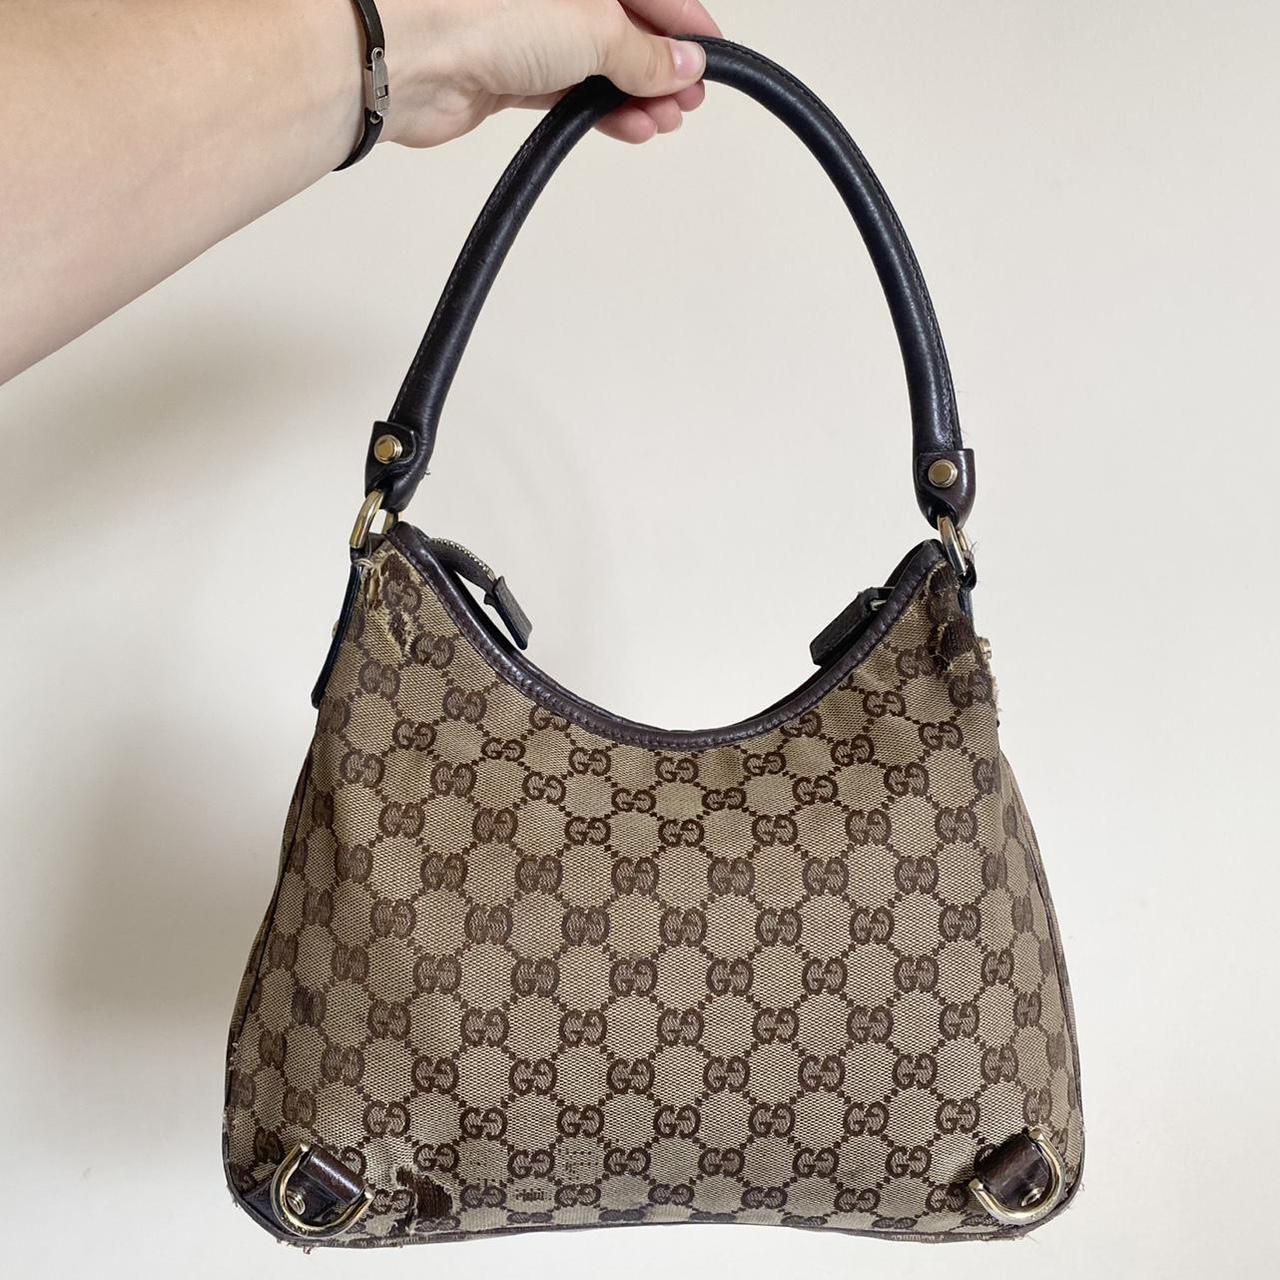 Vintage Gucci shoulder bag 🧸 • Authentic - see... - Depop